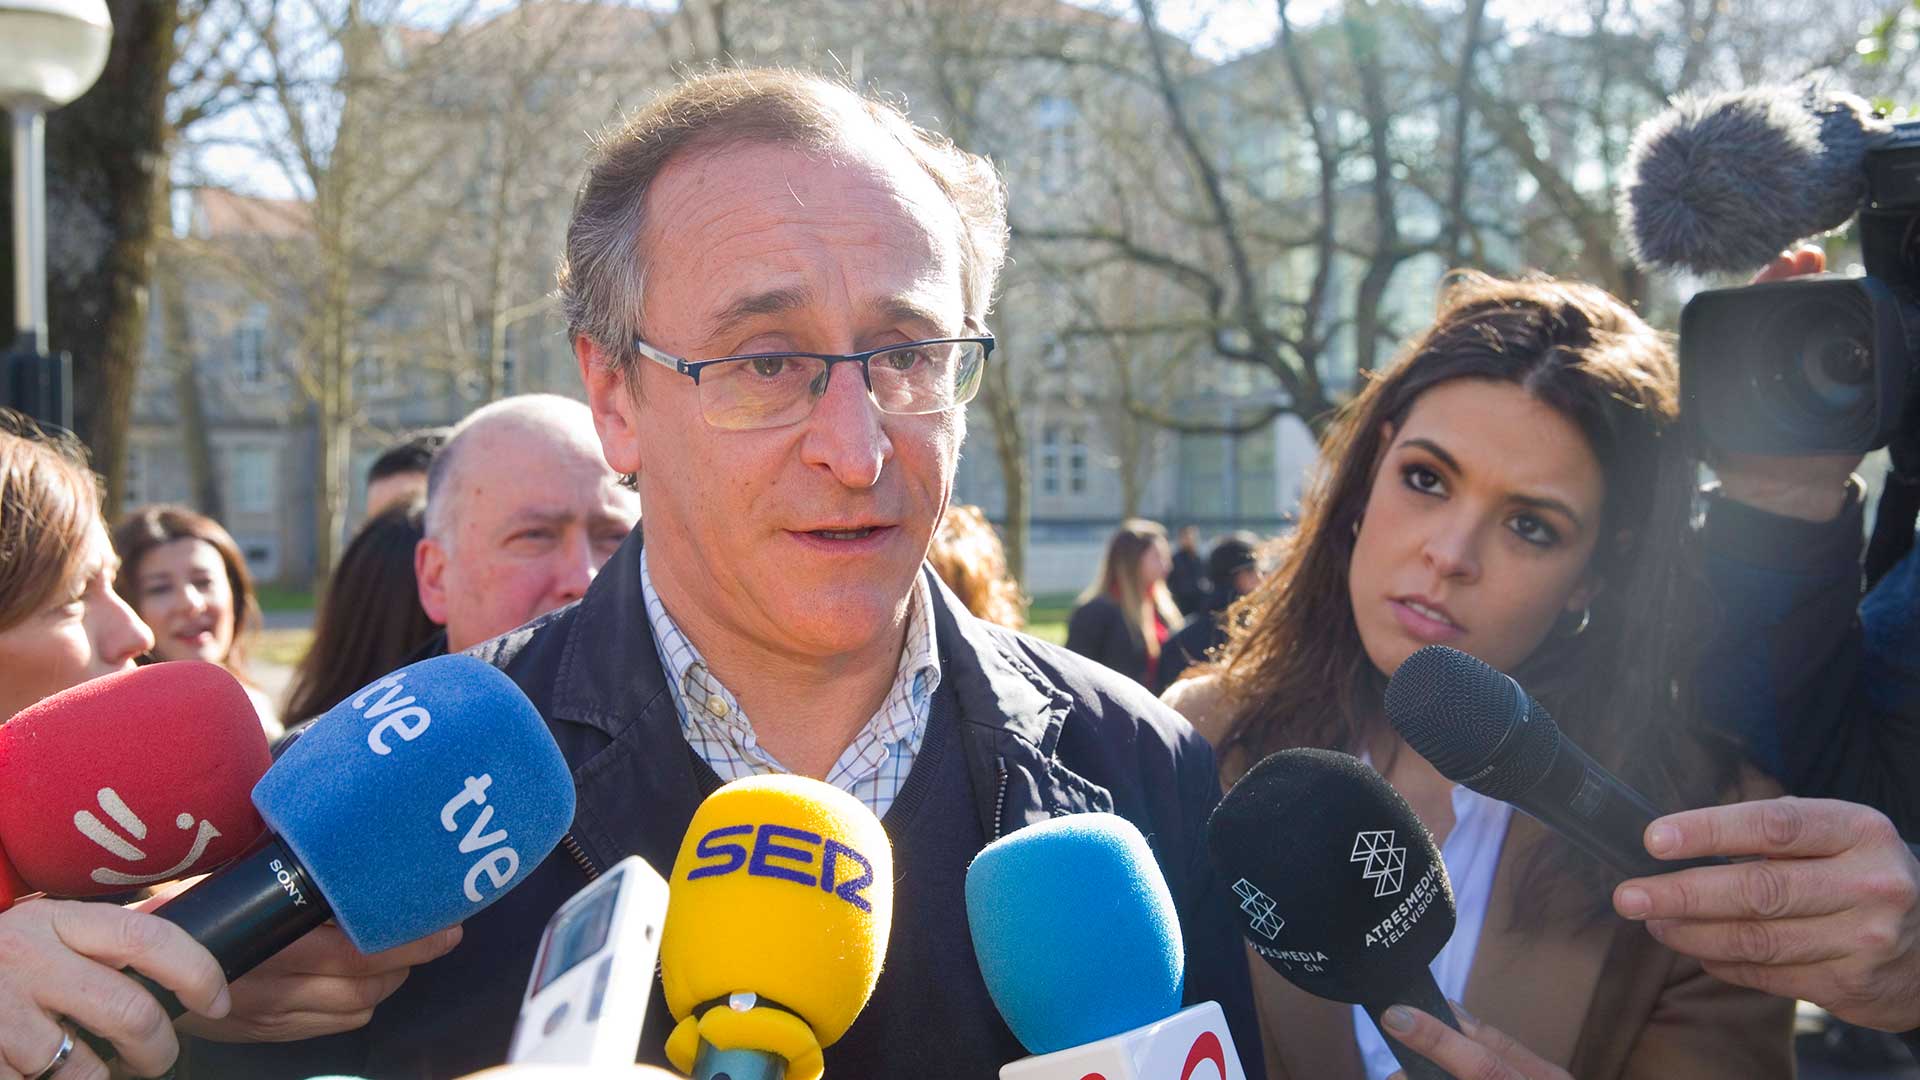 Alfonso Alonso no será el candidato del PP a las elecciones vascas